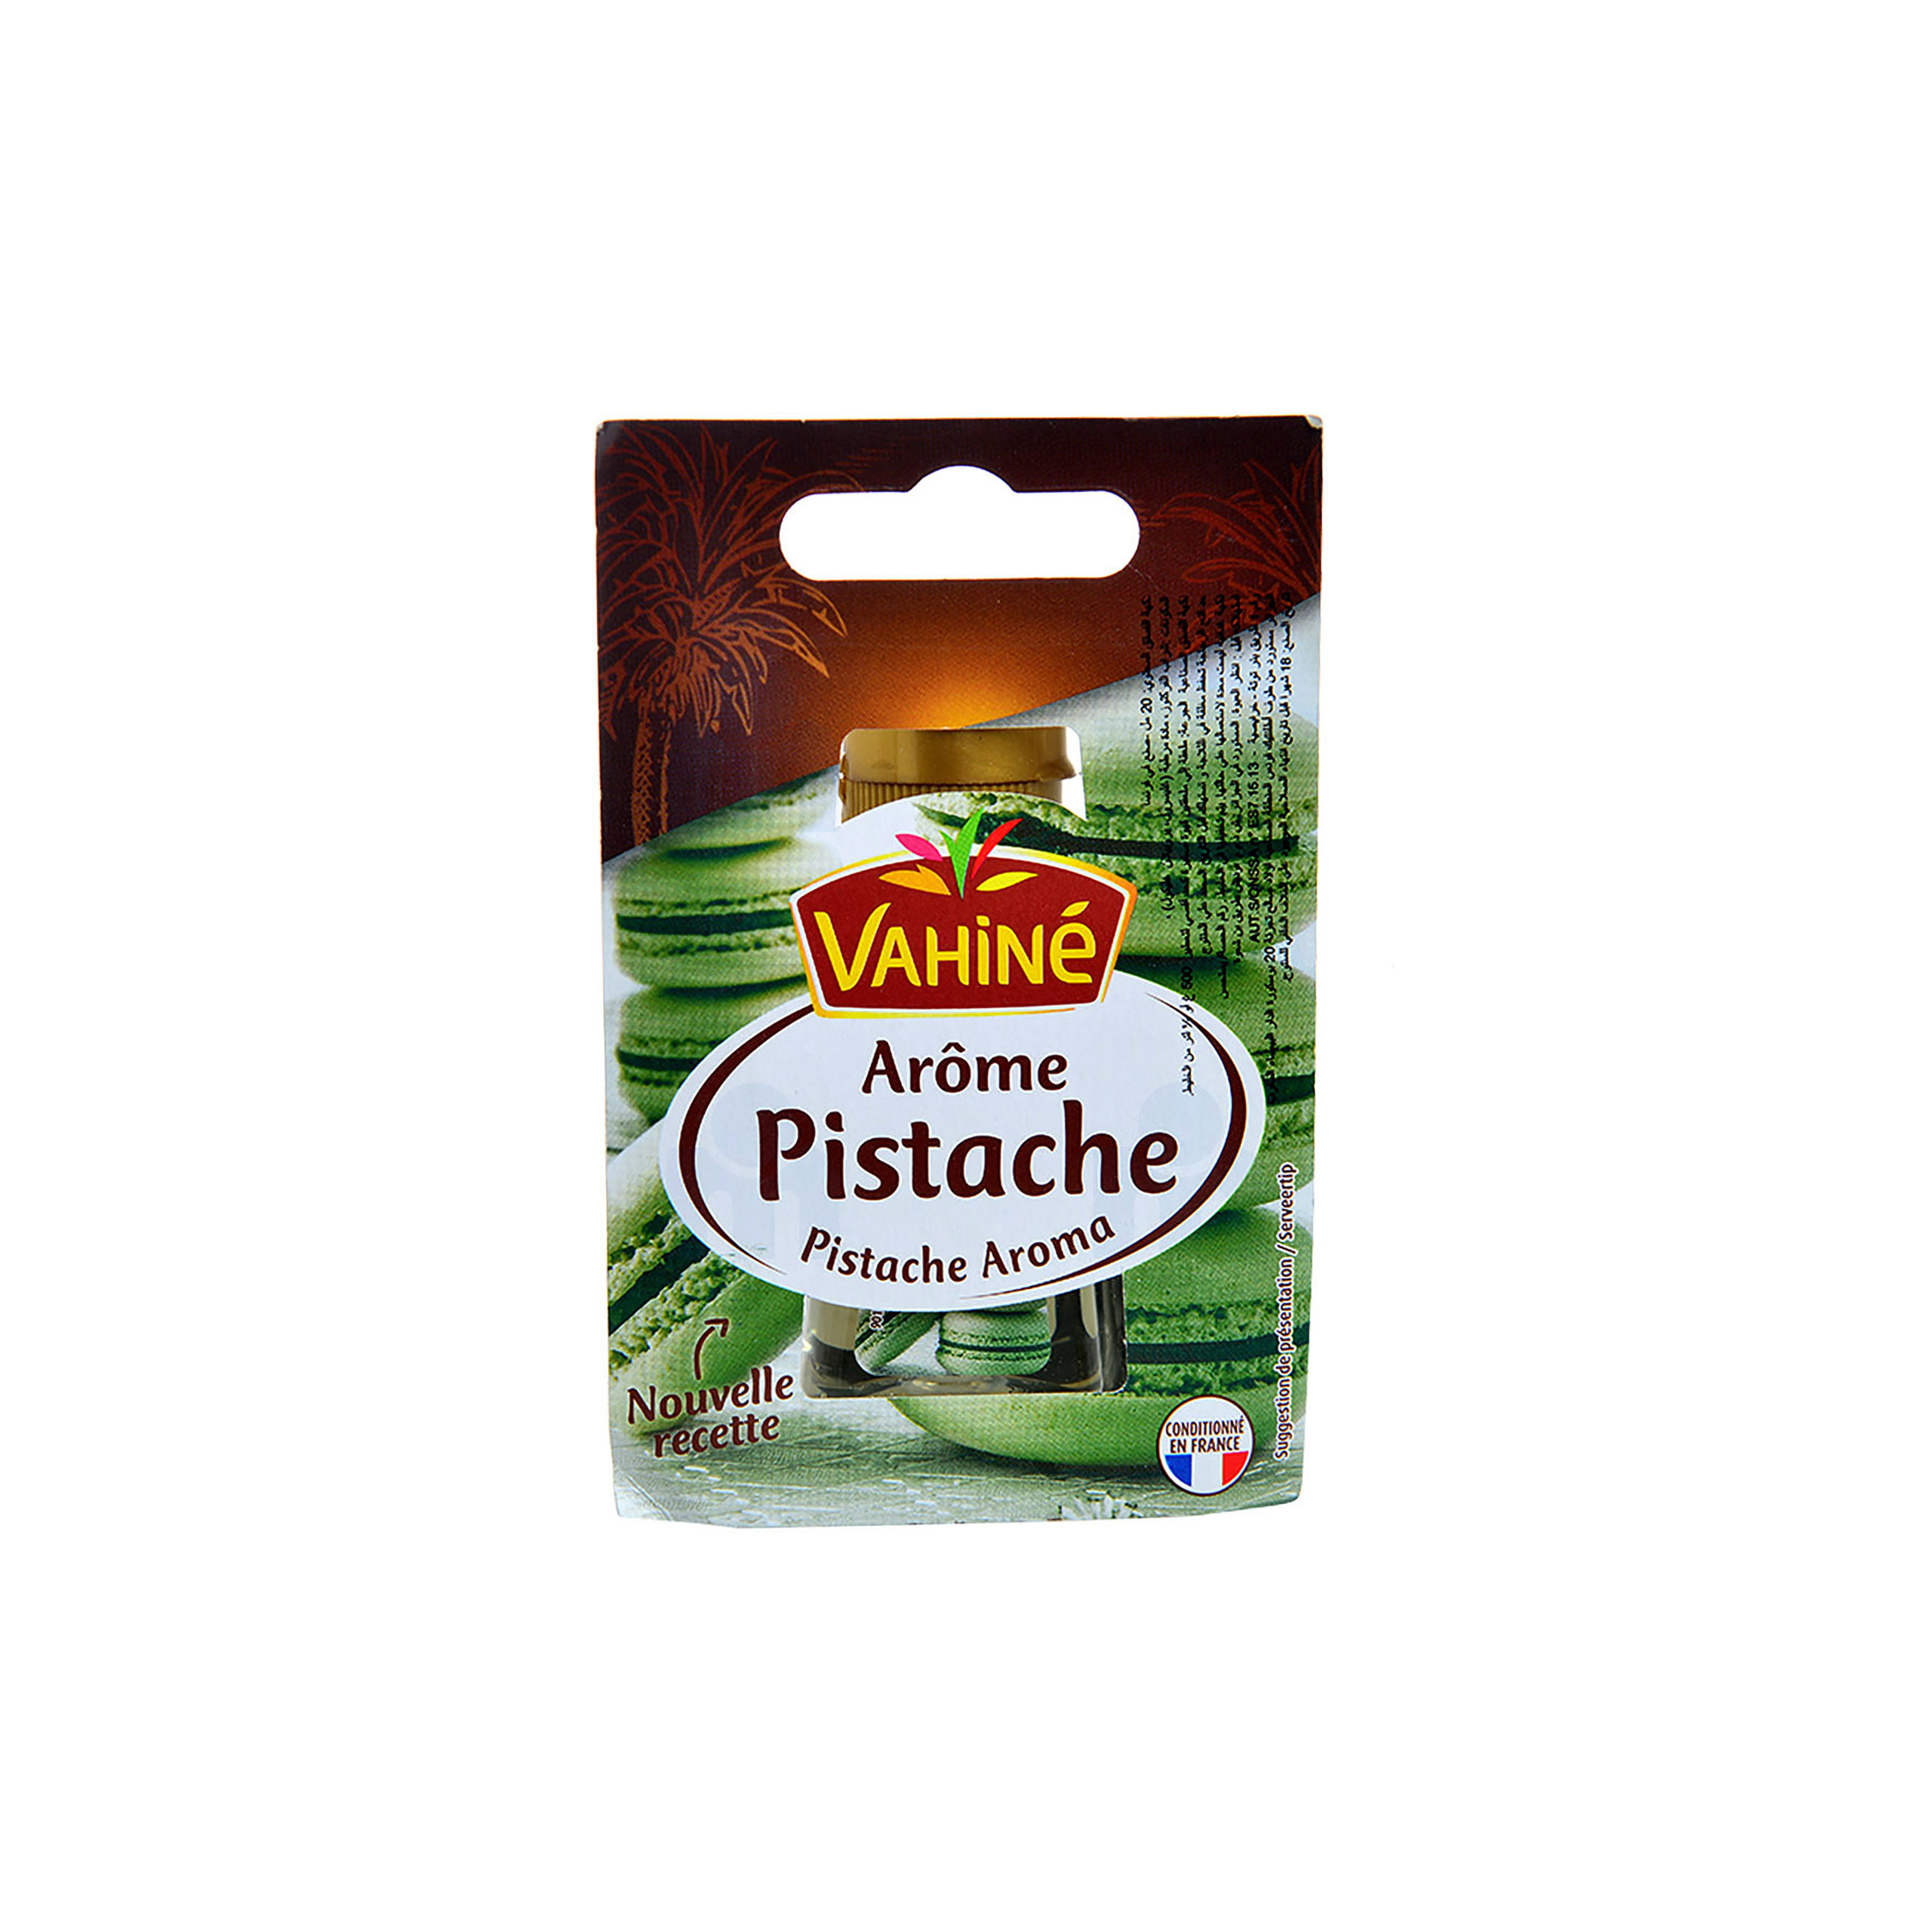 Arôme pistache, Vahiné (20 ml)  La Belle Vie : Courses en Ligne -  Livraison à Domicile